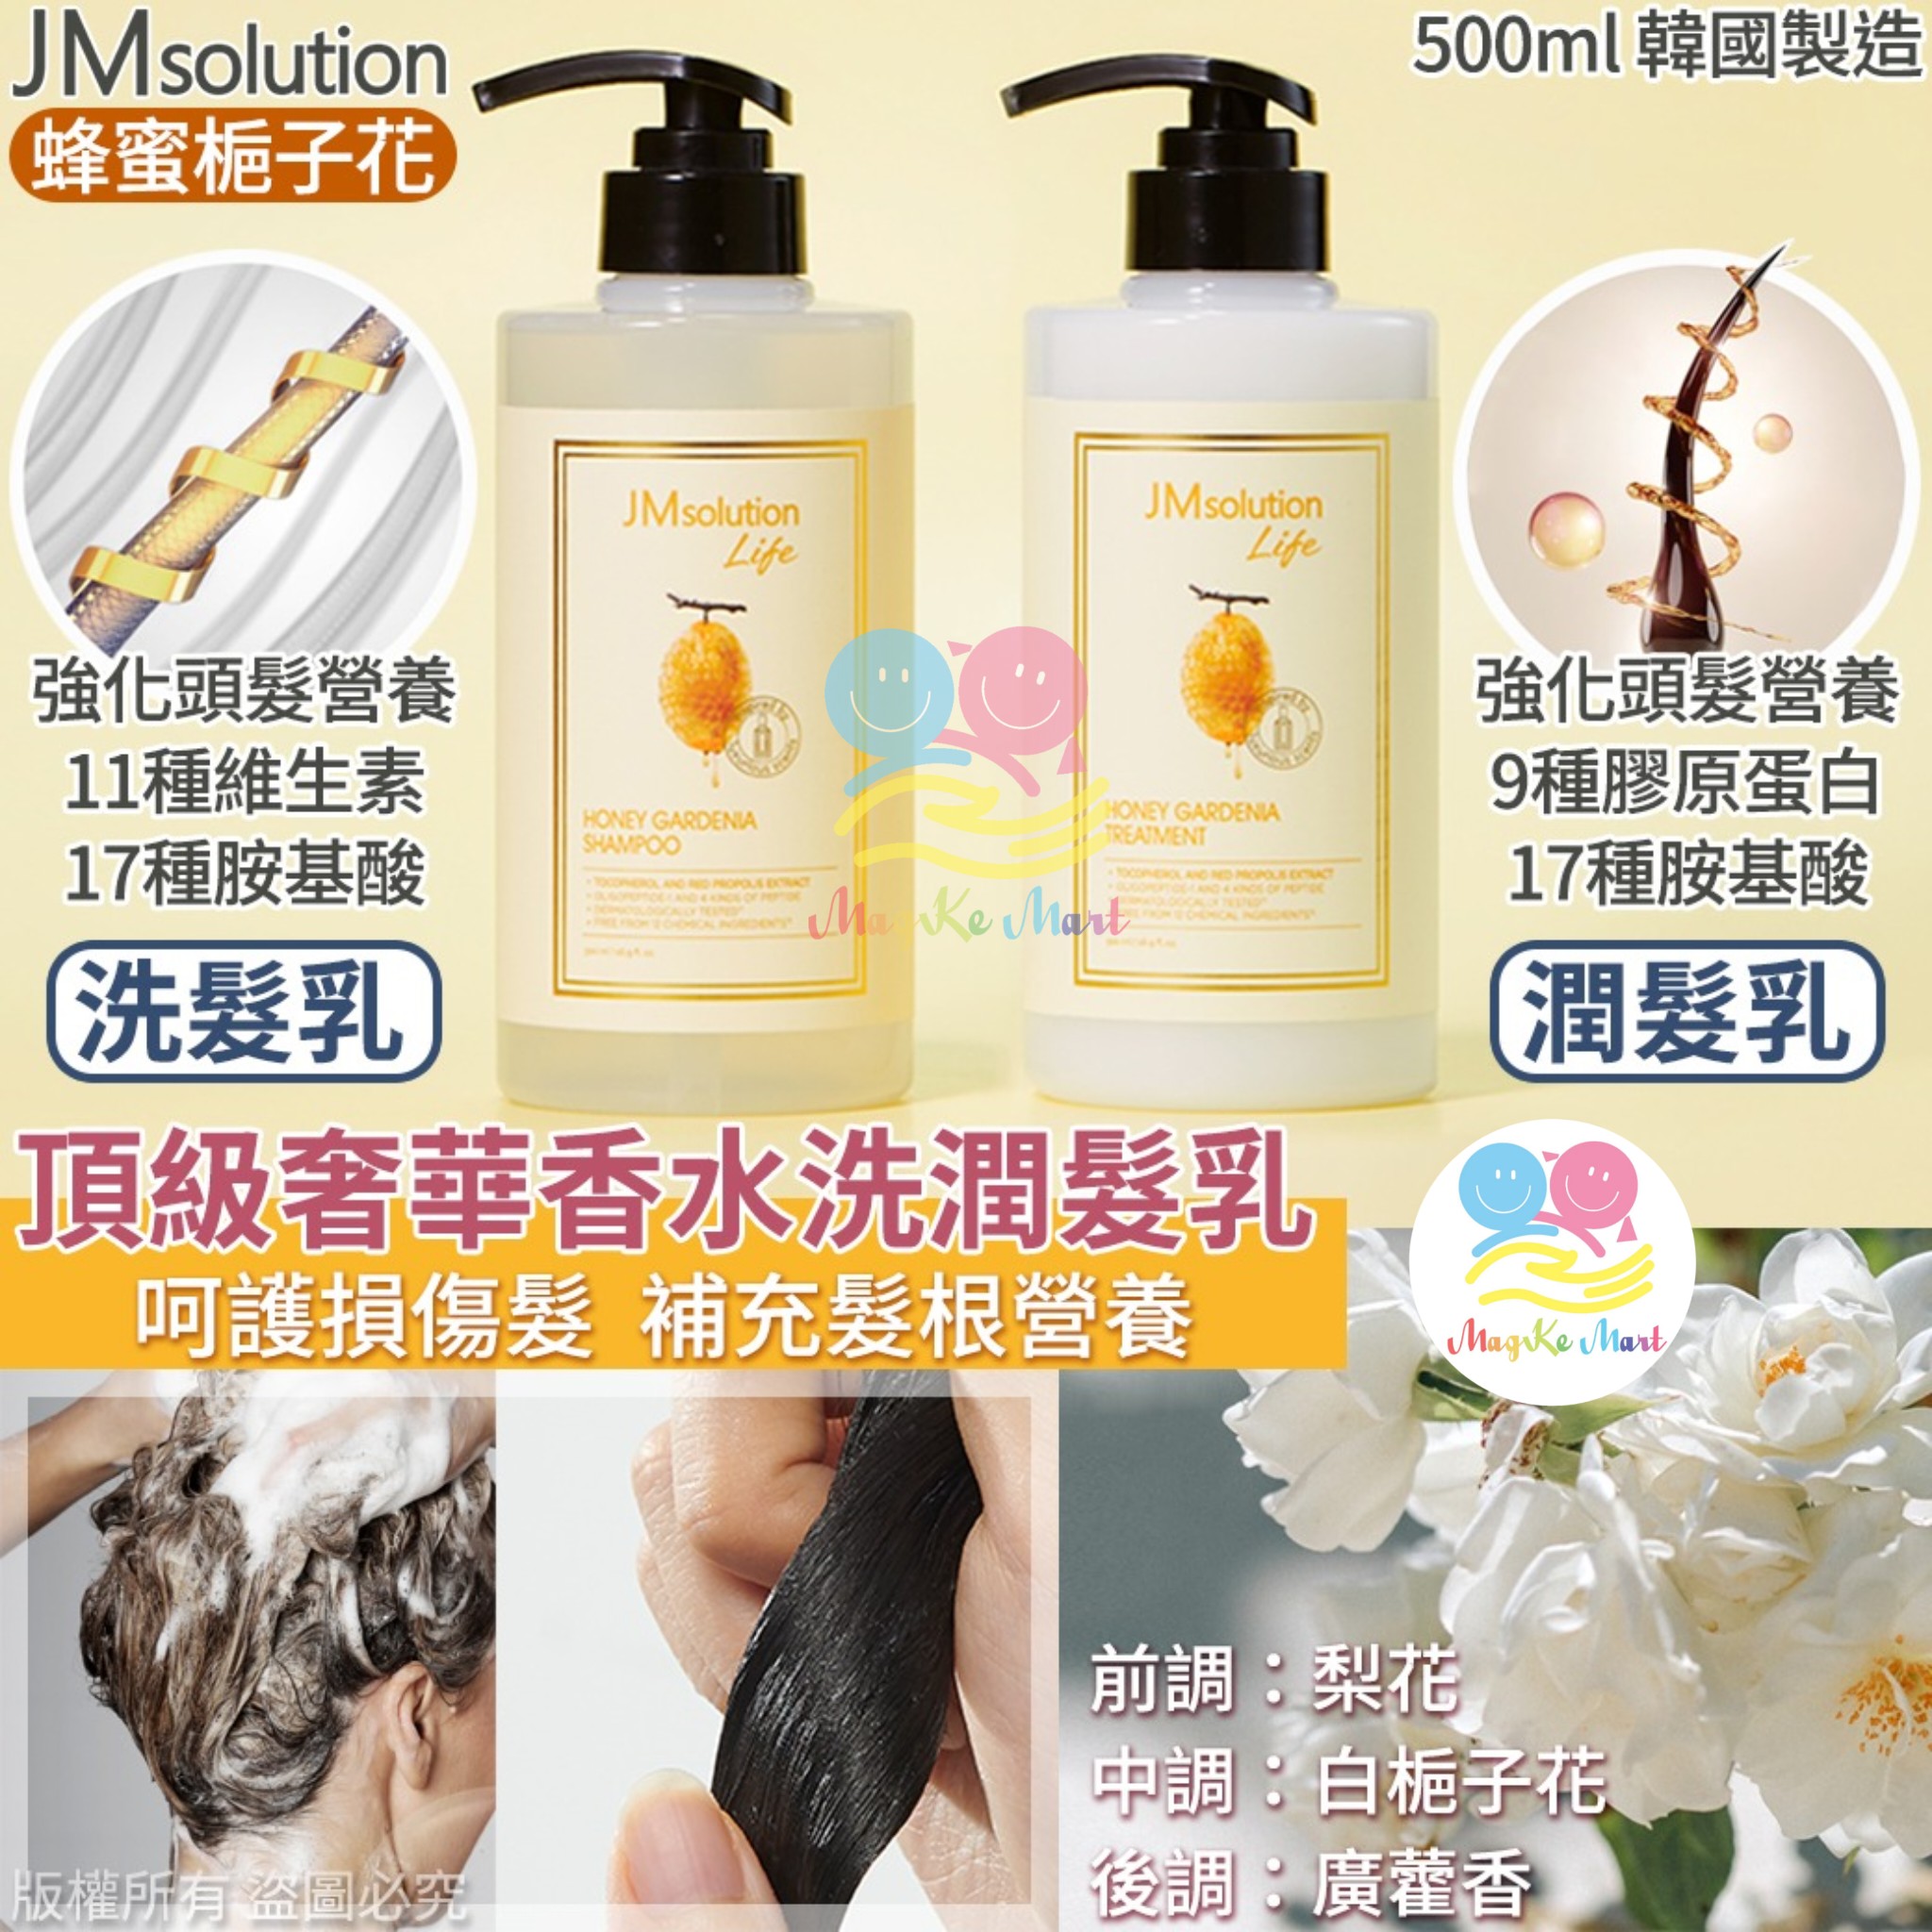 韓國 JM solution 頂級奢華香水洗護系列 500ml